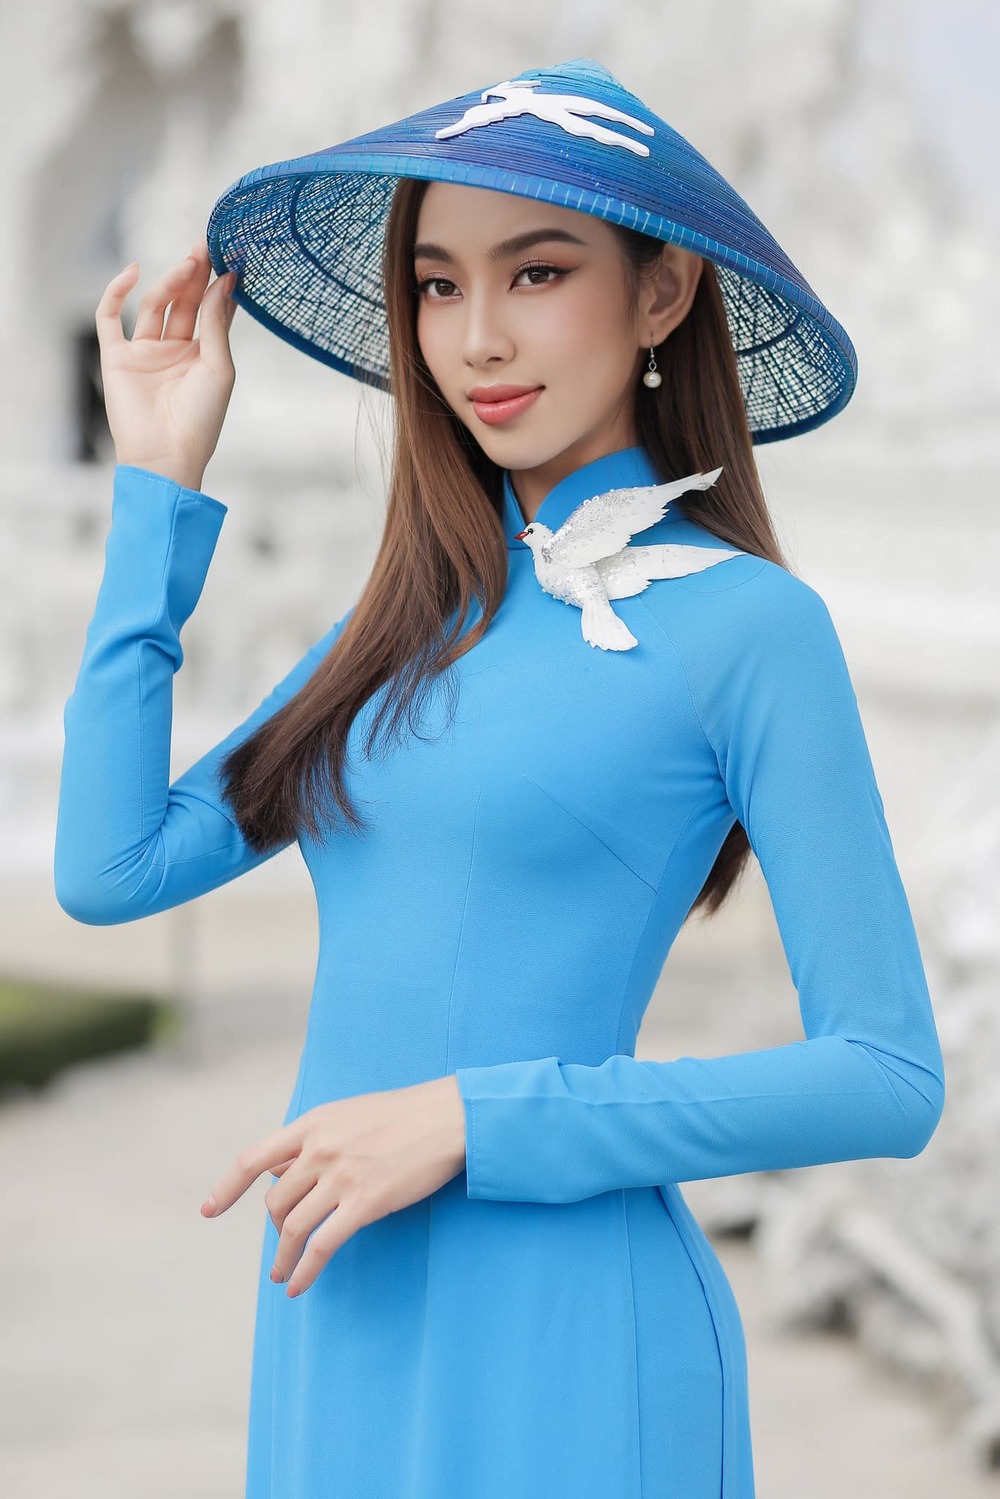  
Hoa hậu Thùy Tiên khoe sắc trong bộ áo dài màu xanh. - Tin sao Viet - Tin tuc sao Viet - Scandal sao Viet - Tin tuc cua Sao - Tin cua Sao